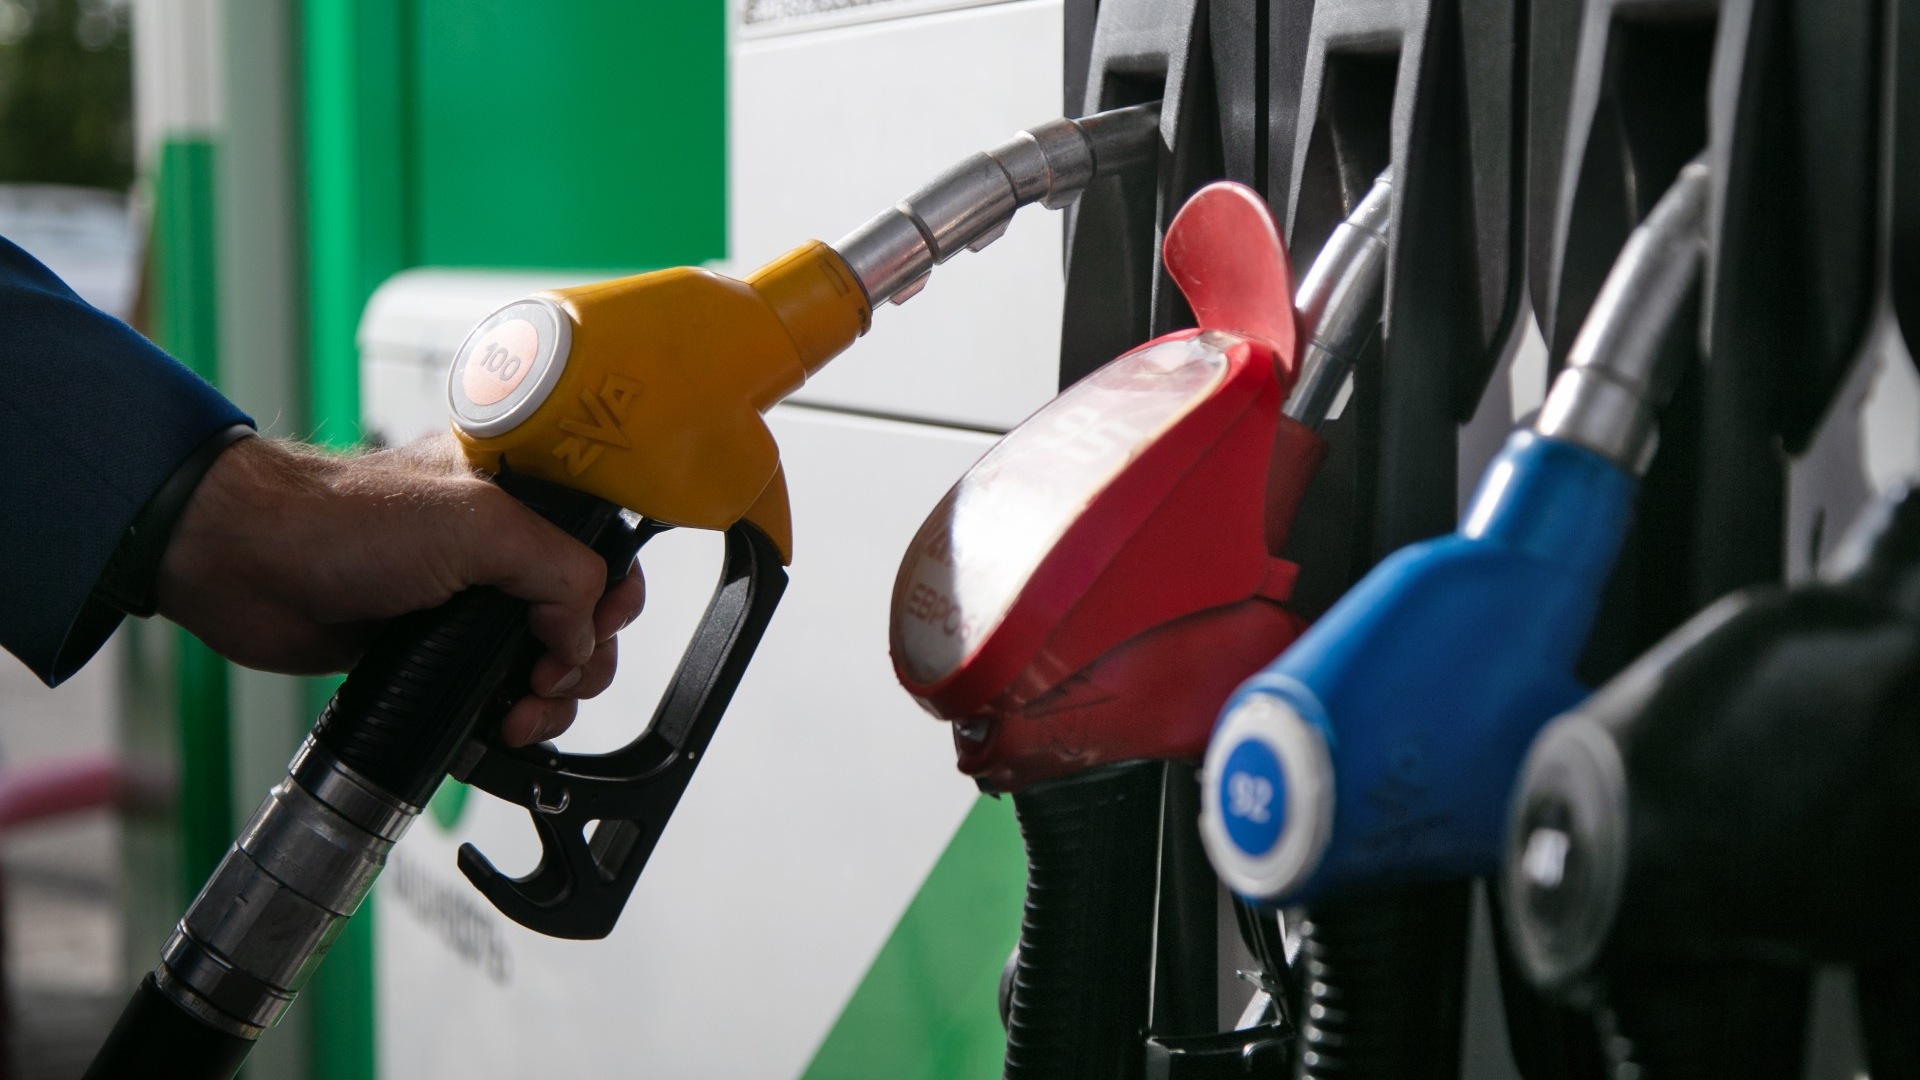 Цены на бензин в регионе прокомментировал губернатор Ставрополья